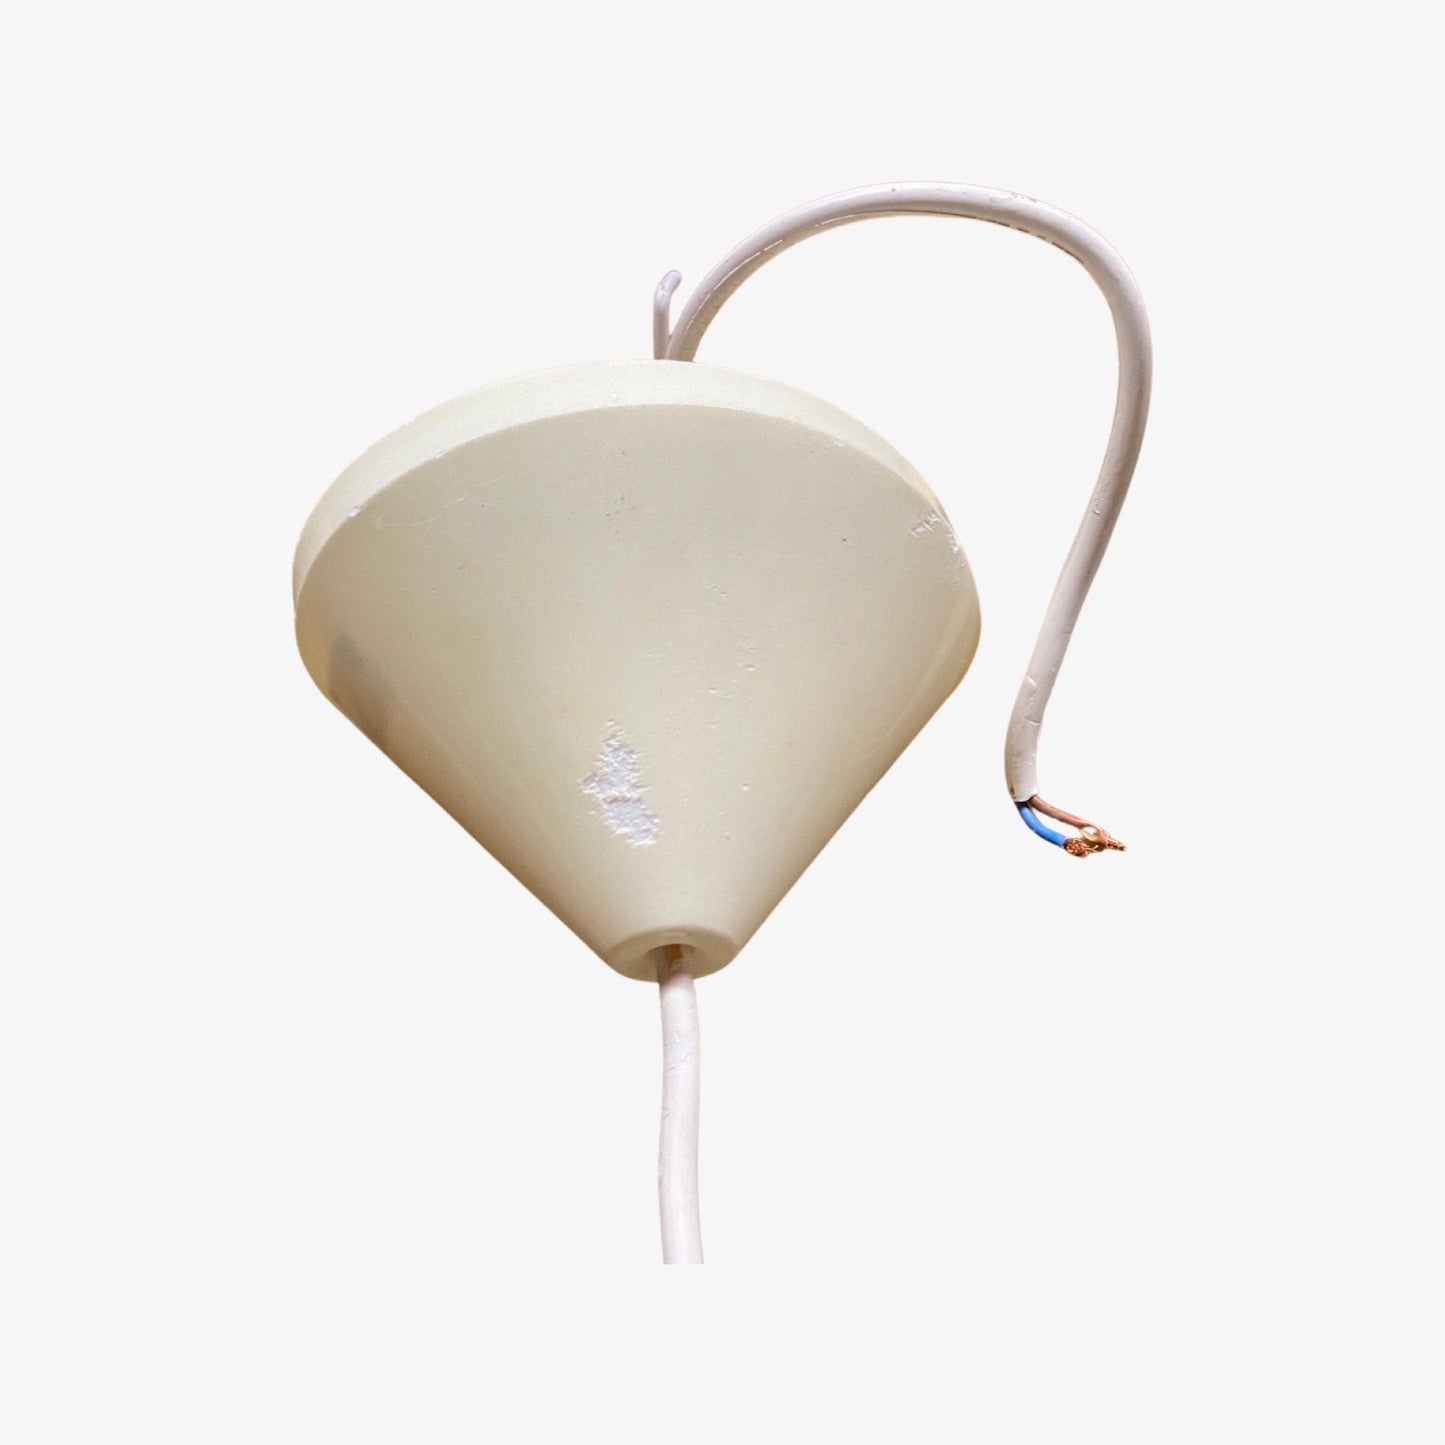 White Retro Swedish Hanging Light | Enamel Designer Lamp from Sweden, 1960s, 1970s | Scandinavian Modern Lighting | Dia 15.4'' / 39cm Active - FancyVintage.nl -